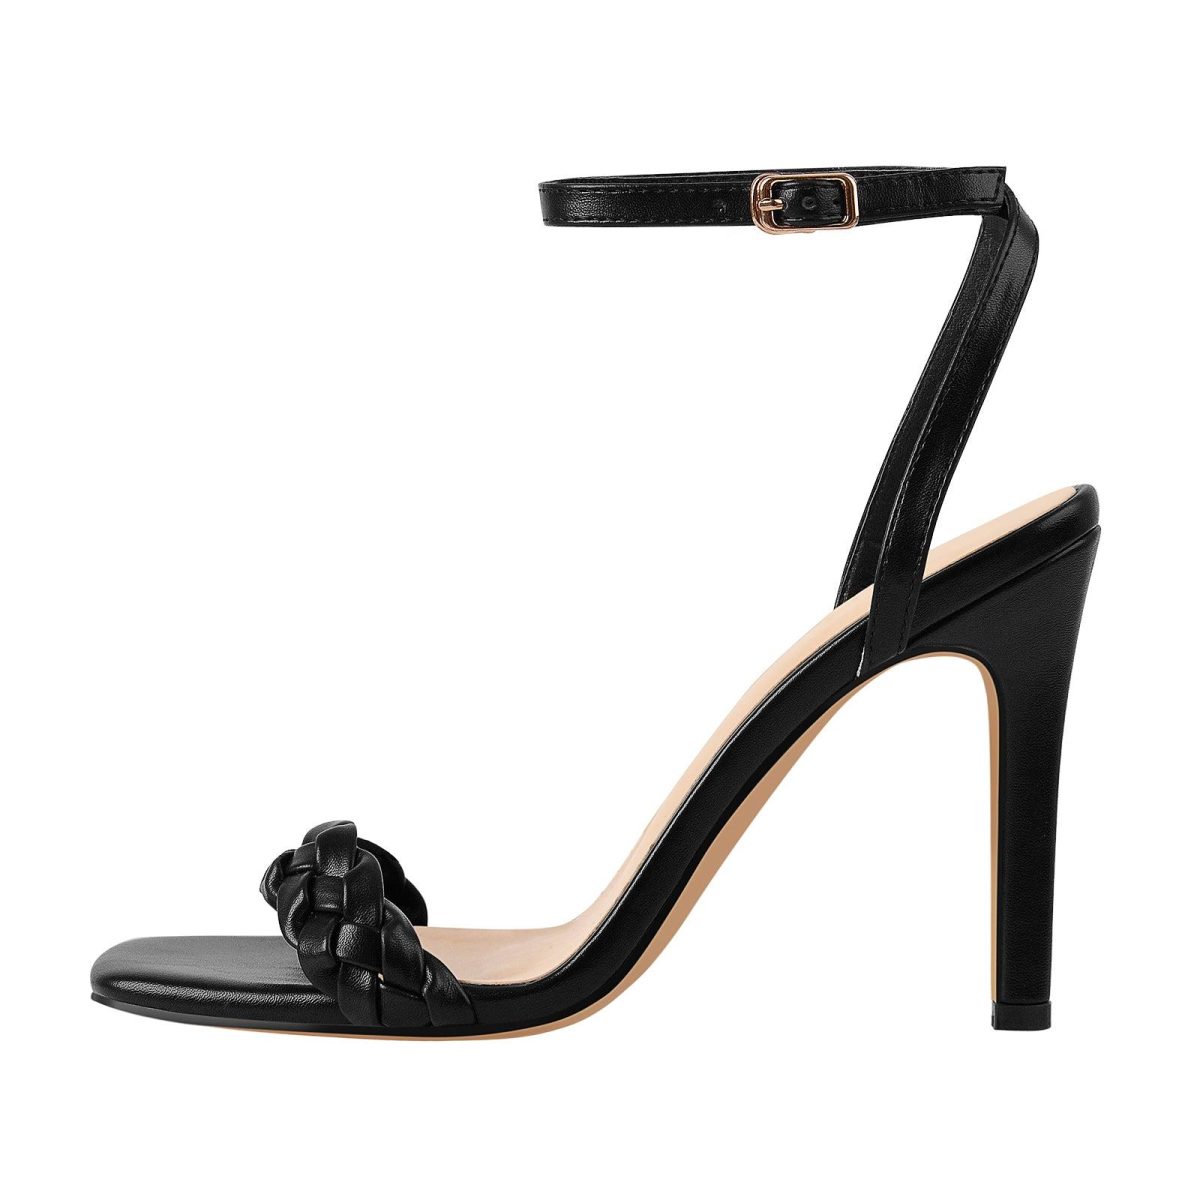 black stiletto heels sandals